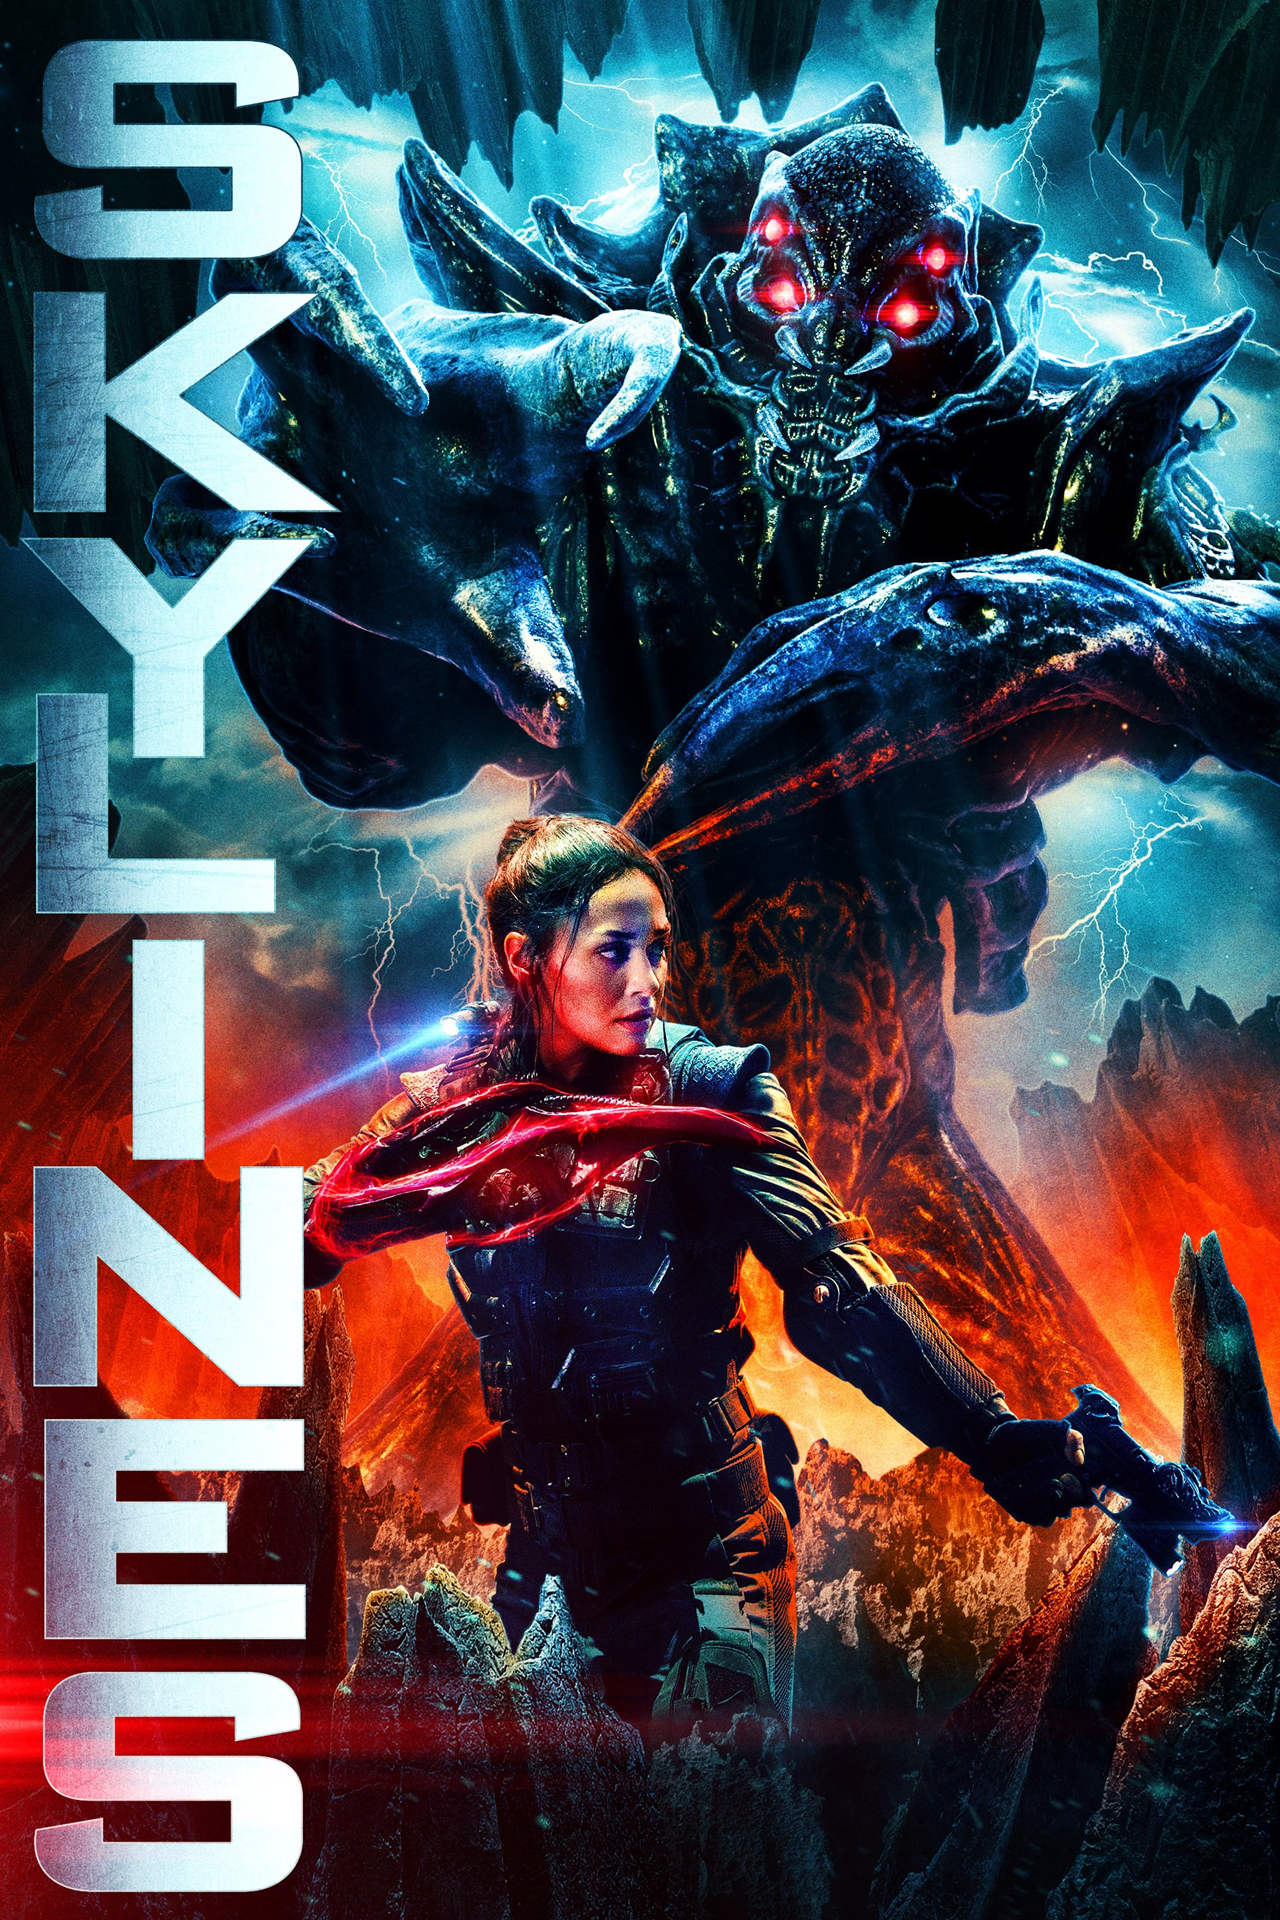 天际浩劫3,英文名为skylines,是2020年上映的美国动作电影